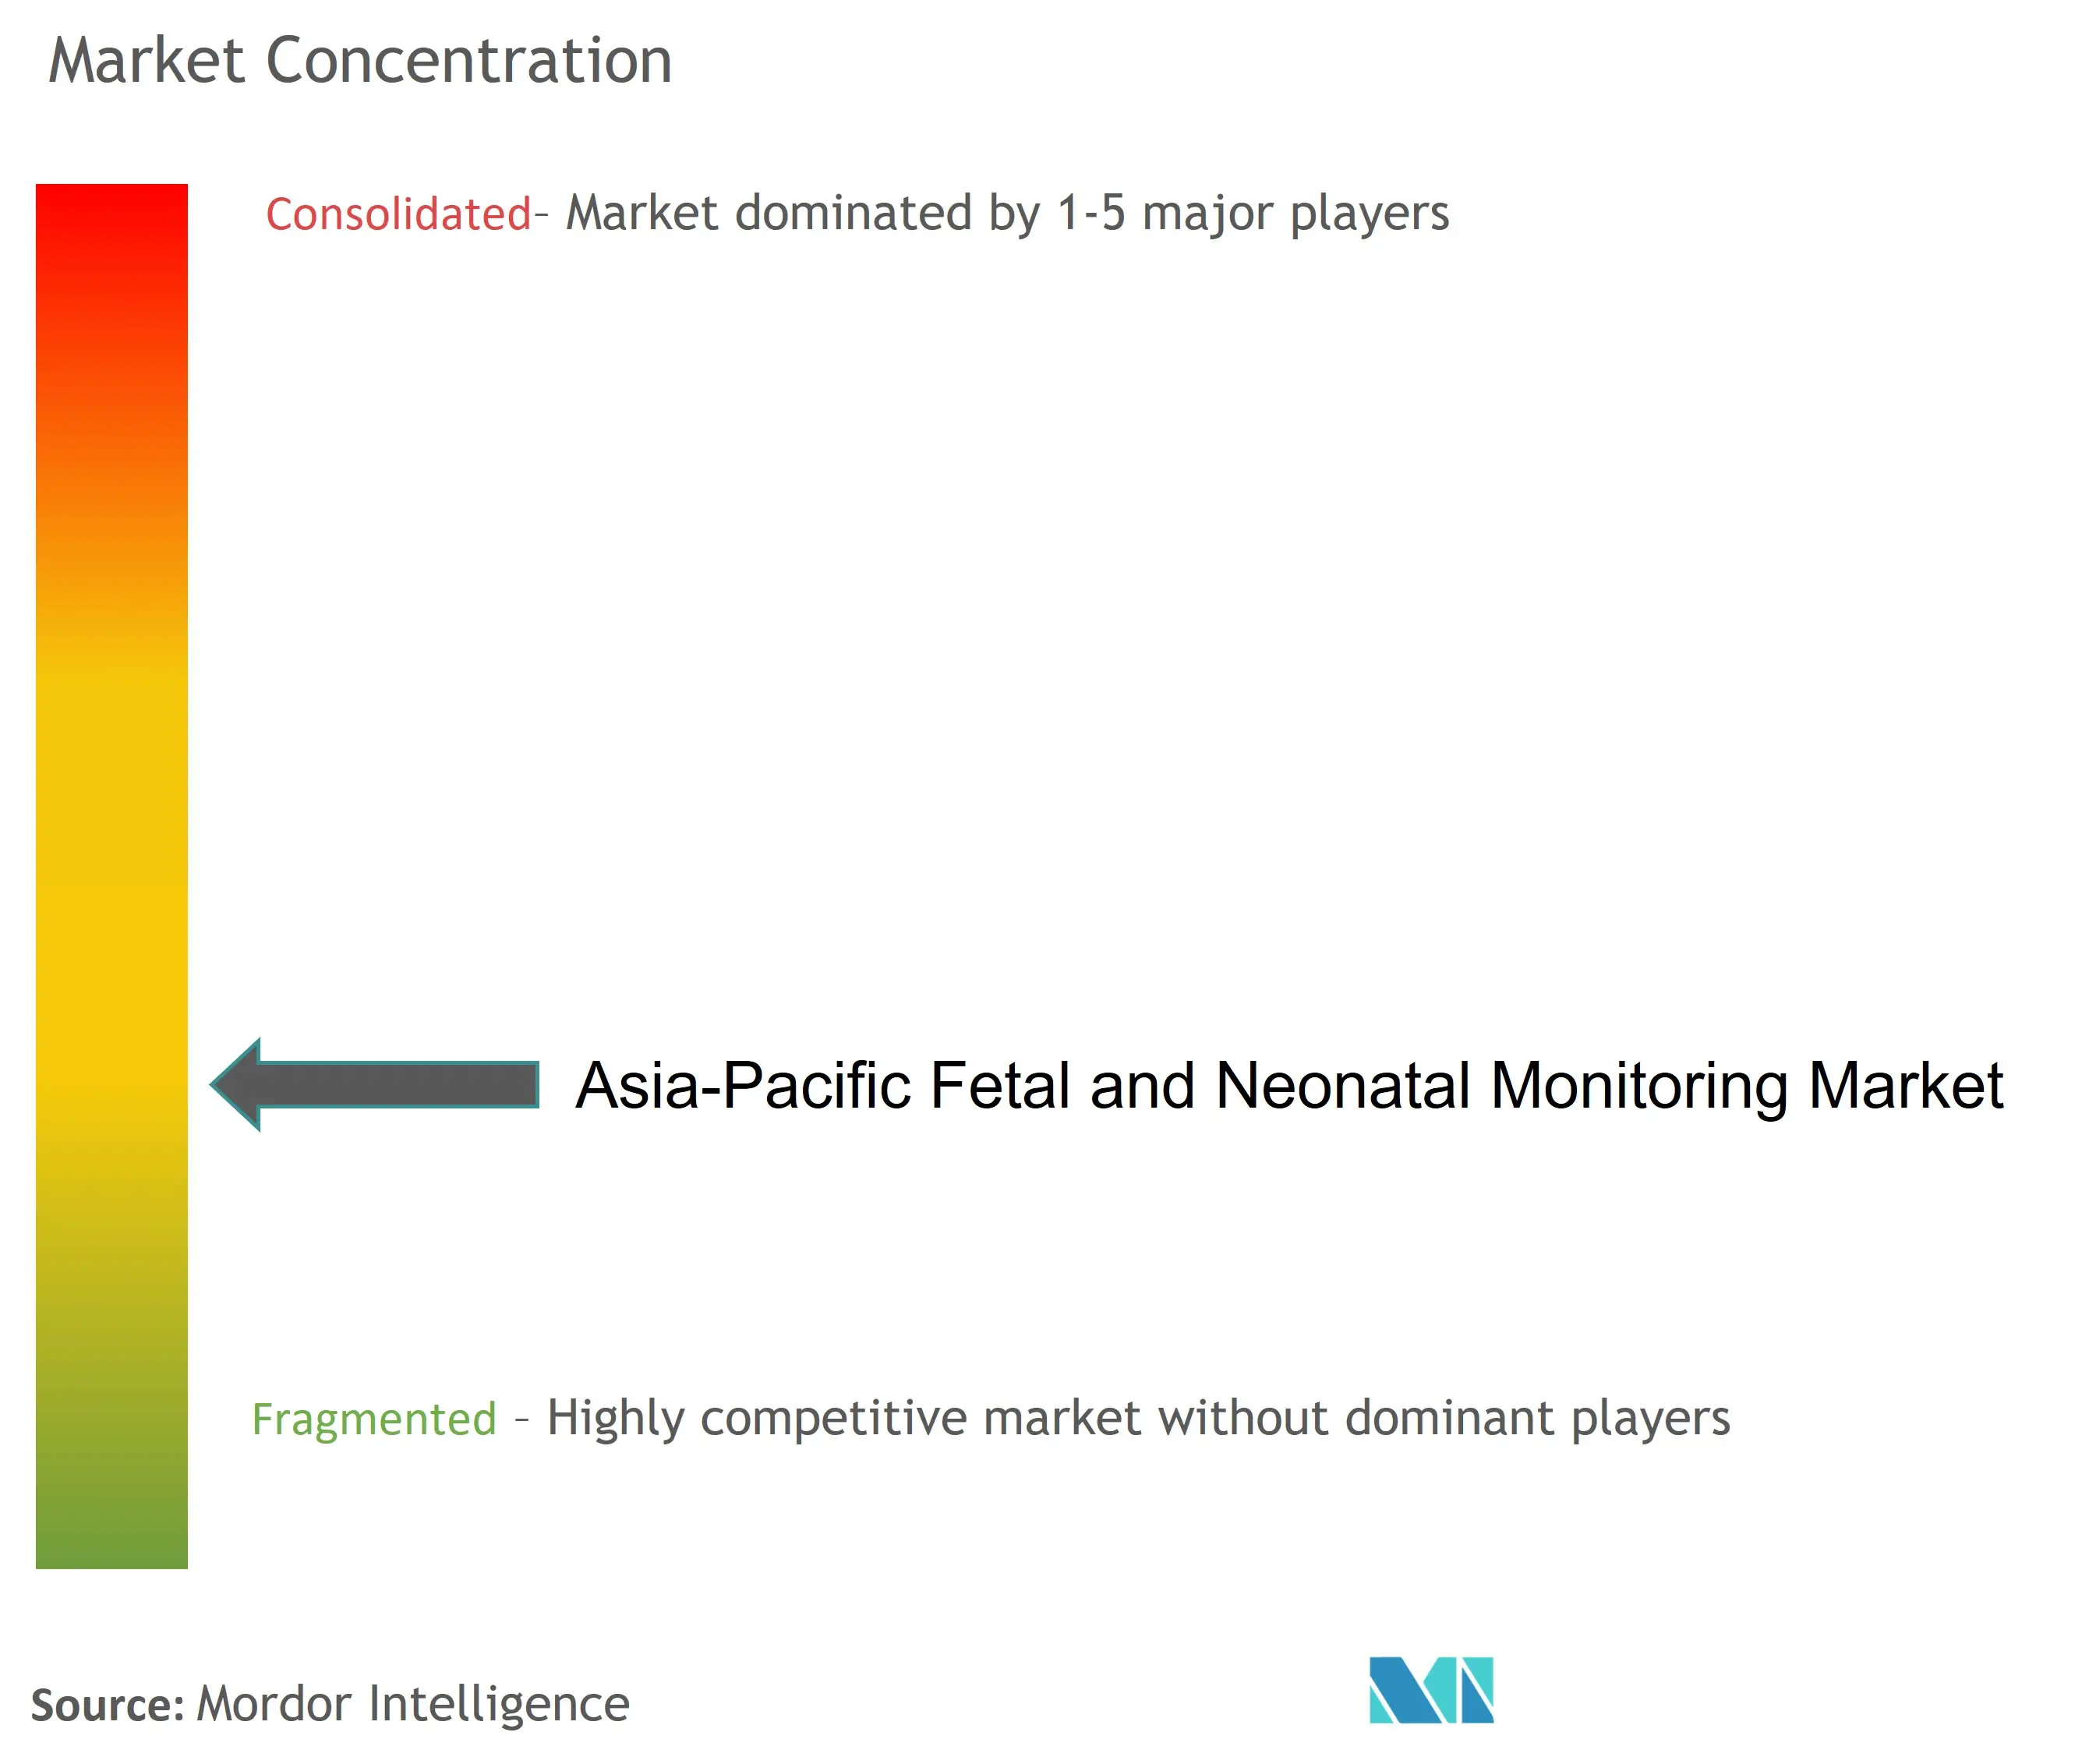 تركيز سوق مراقبة الأجنة وحديثي الولادة في منطقة آسيا والمحيط الهادئ